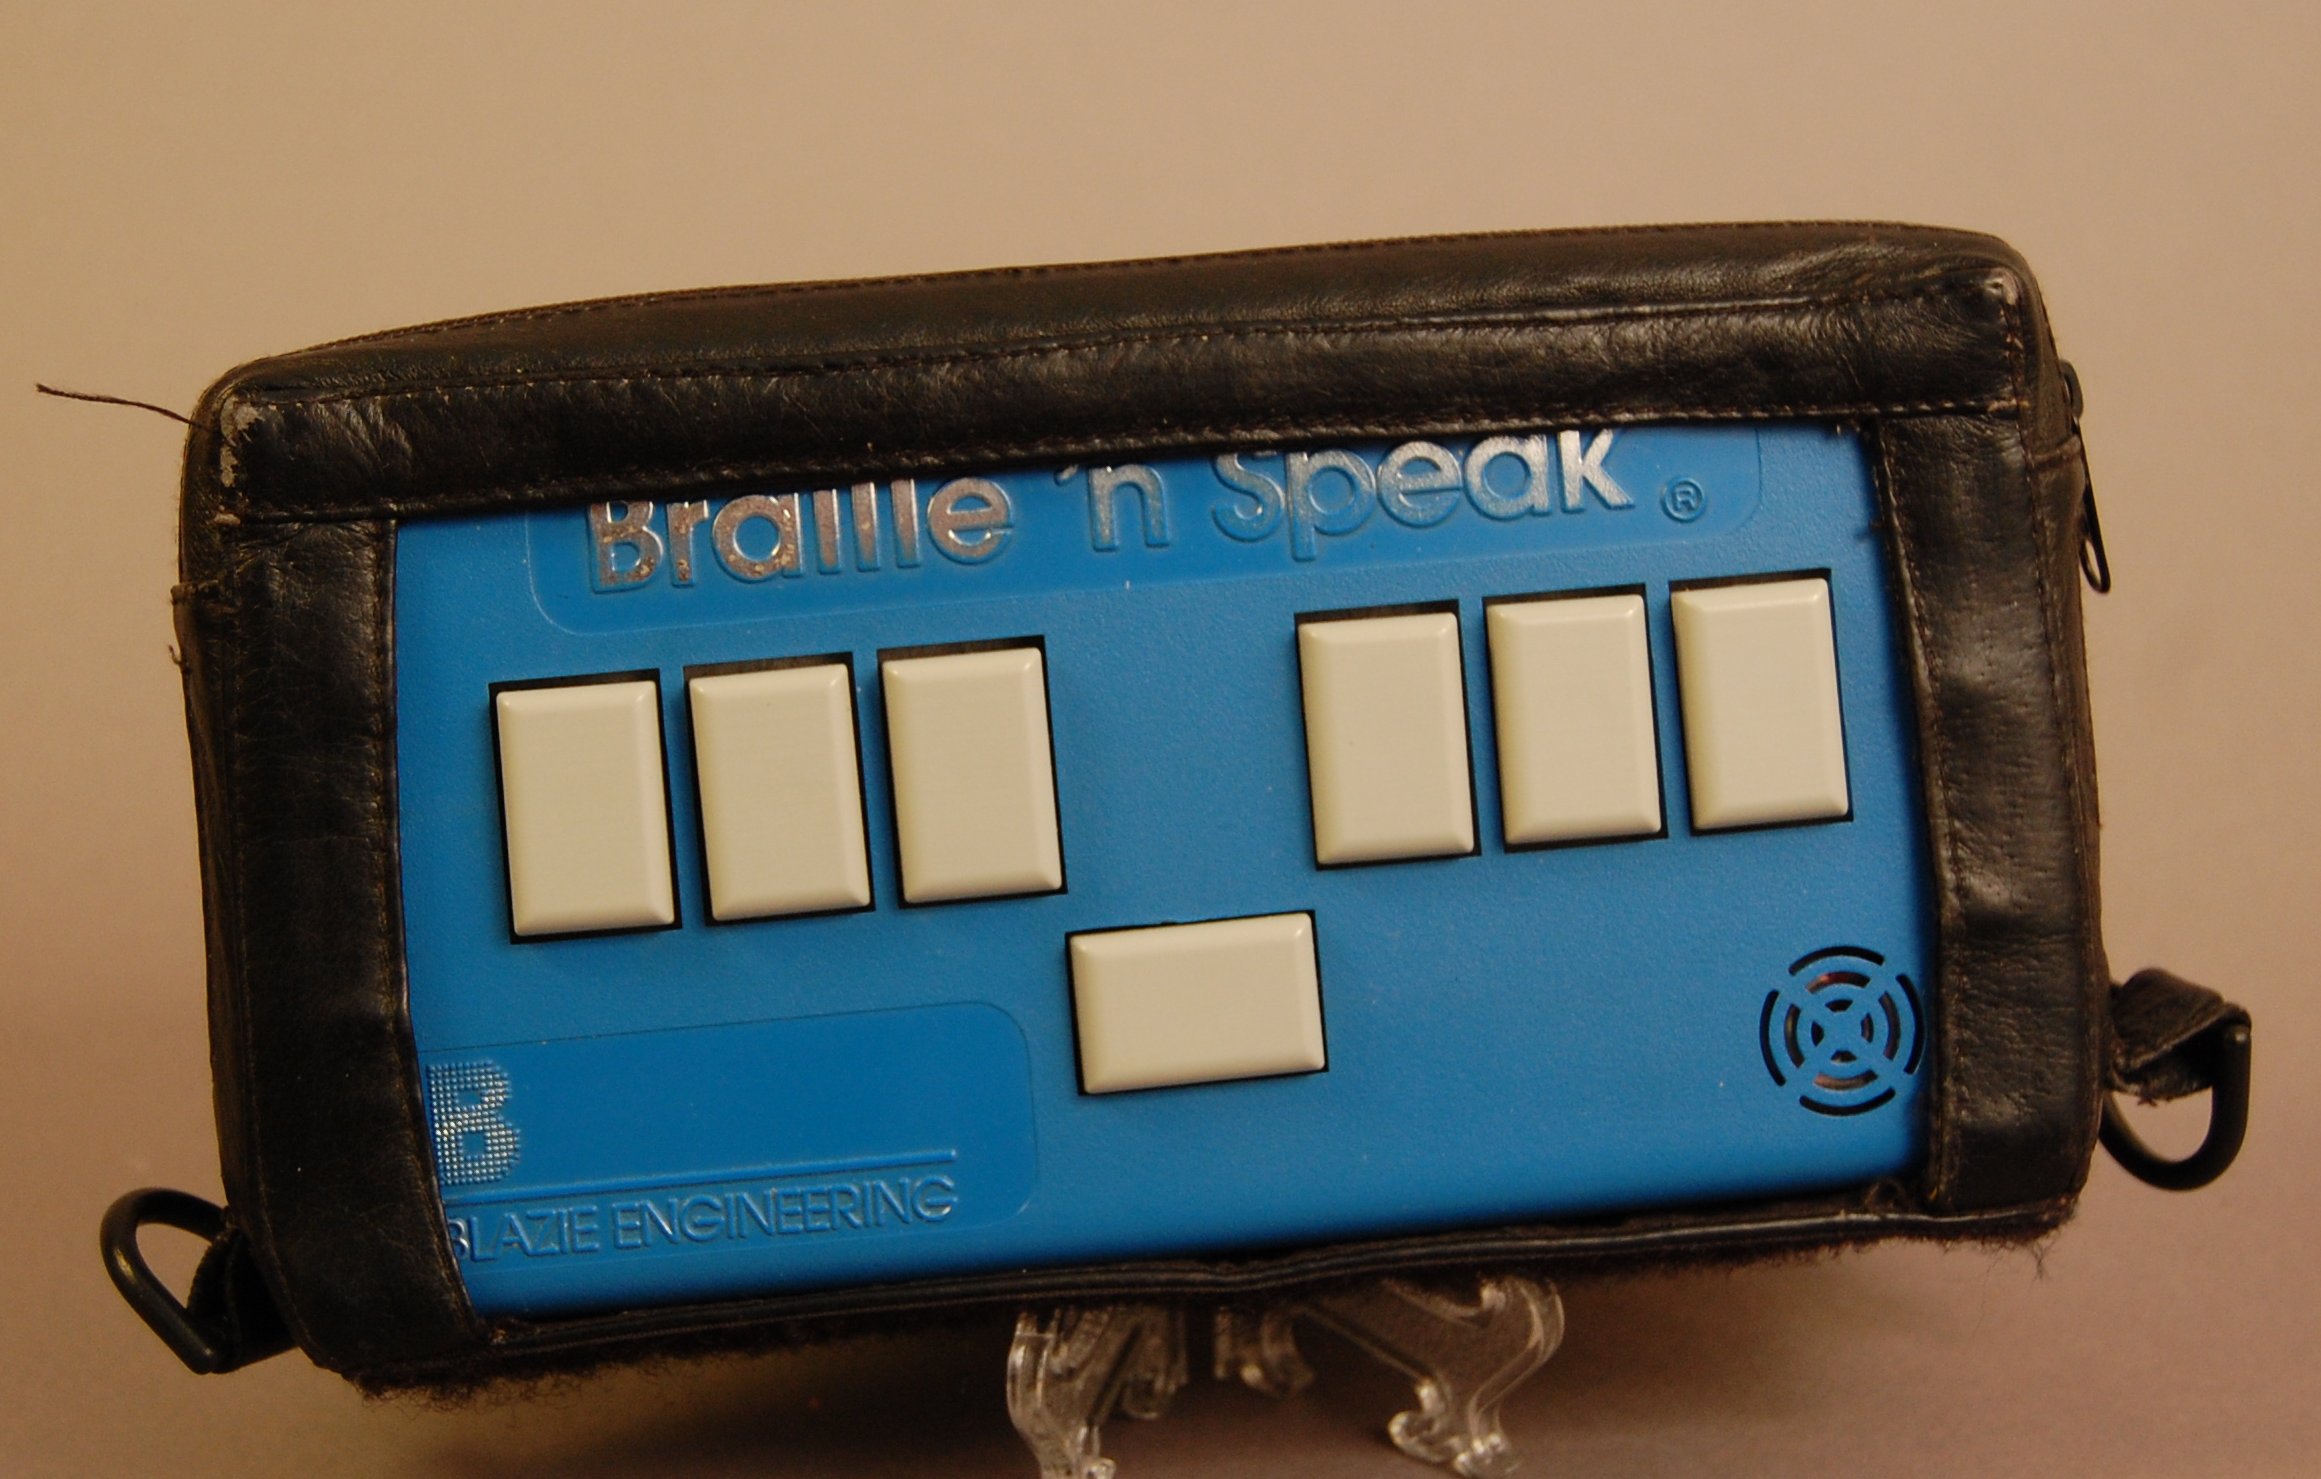 Braille 'n Speak-1